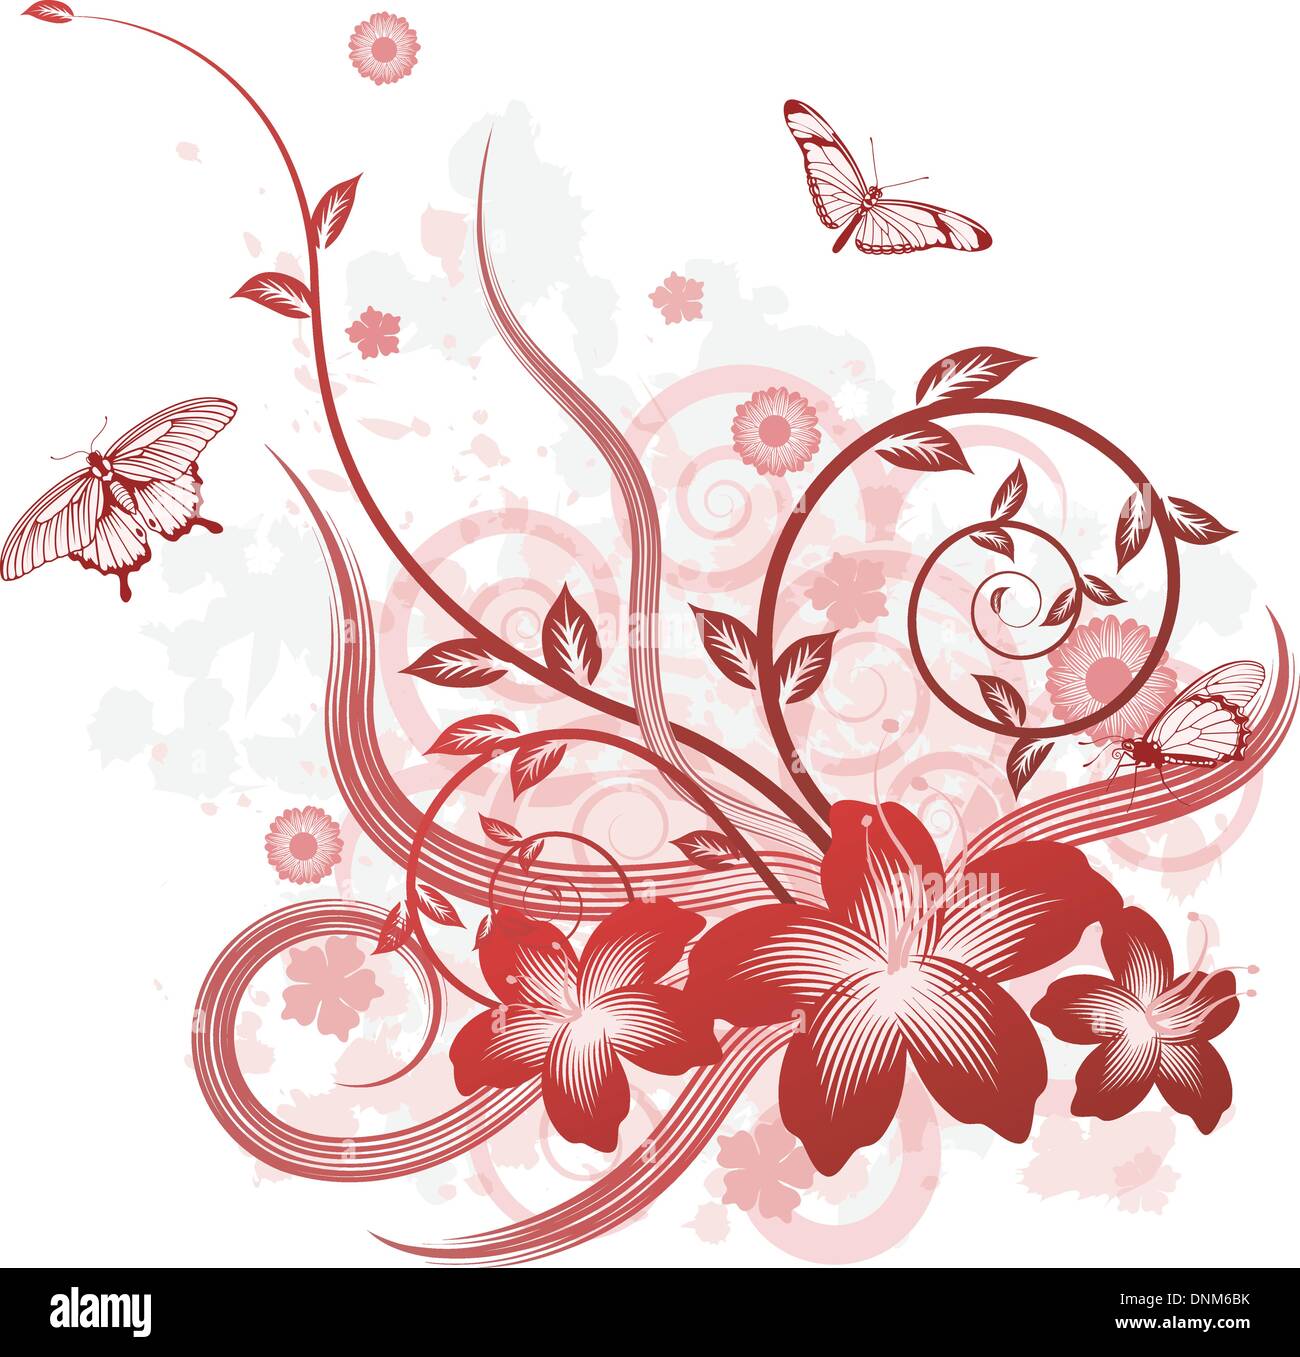 Eine detaillierte schöne Blumenkarte Design mit Schmetterlingen. Stock Vektor